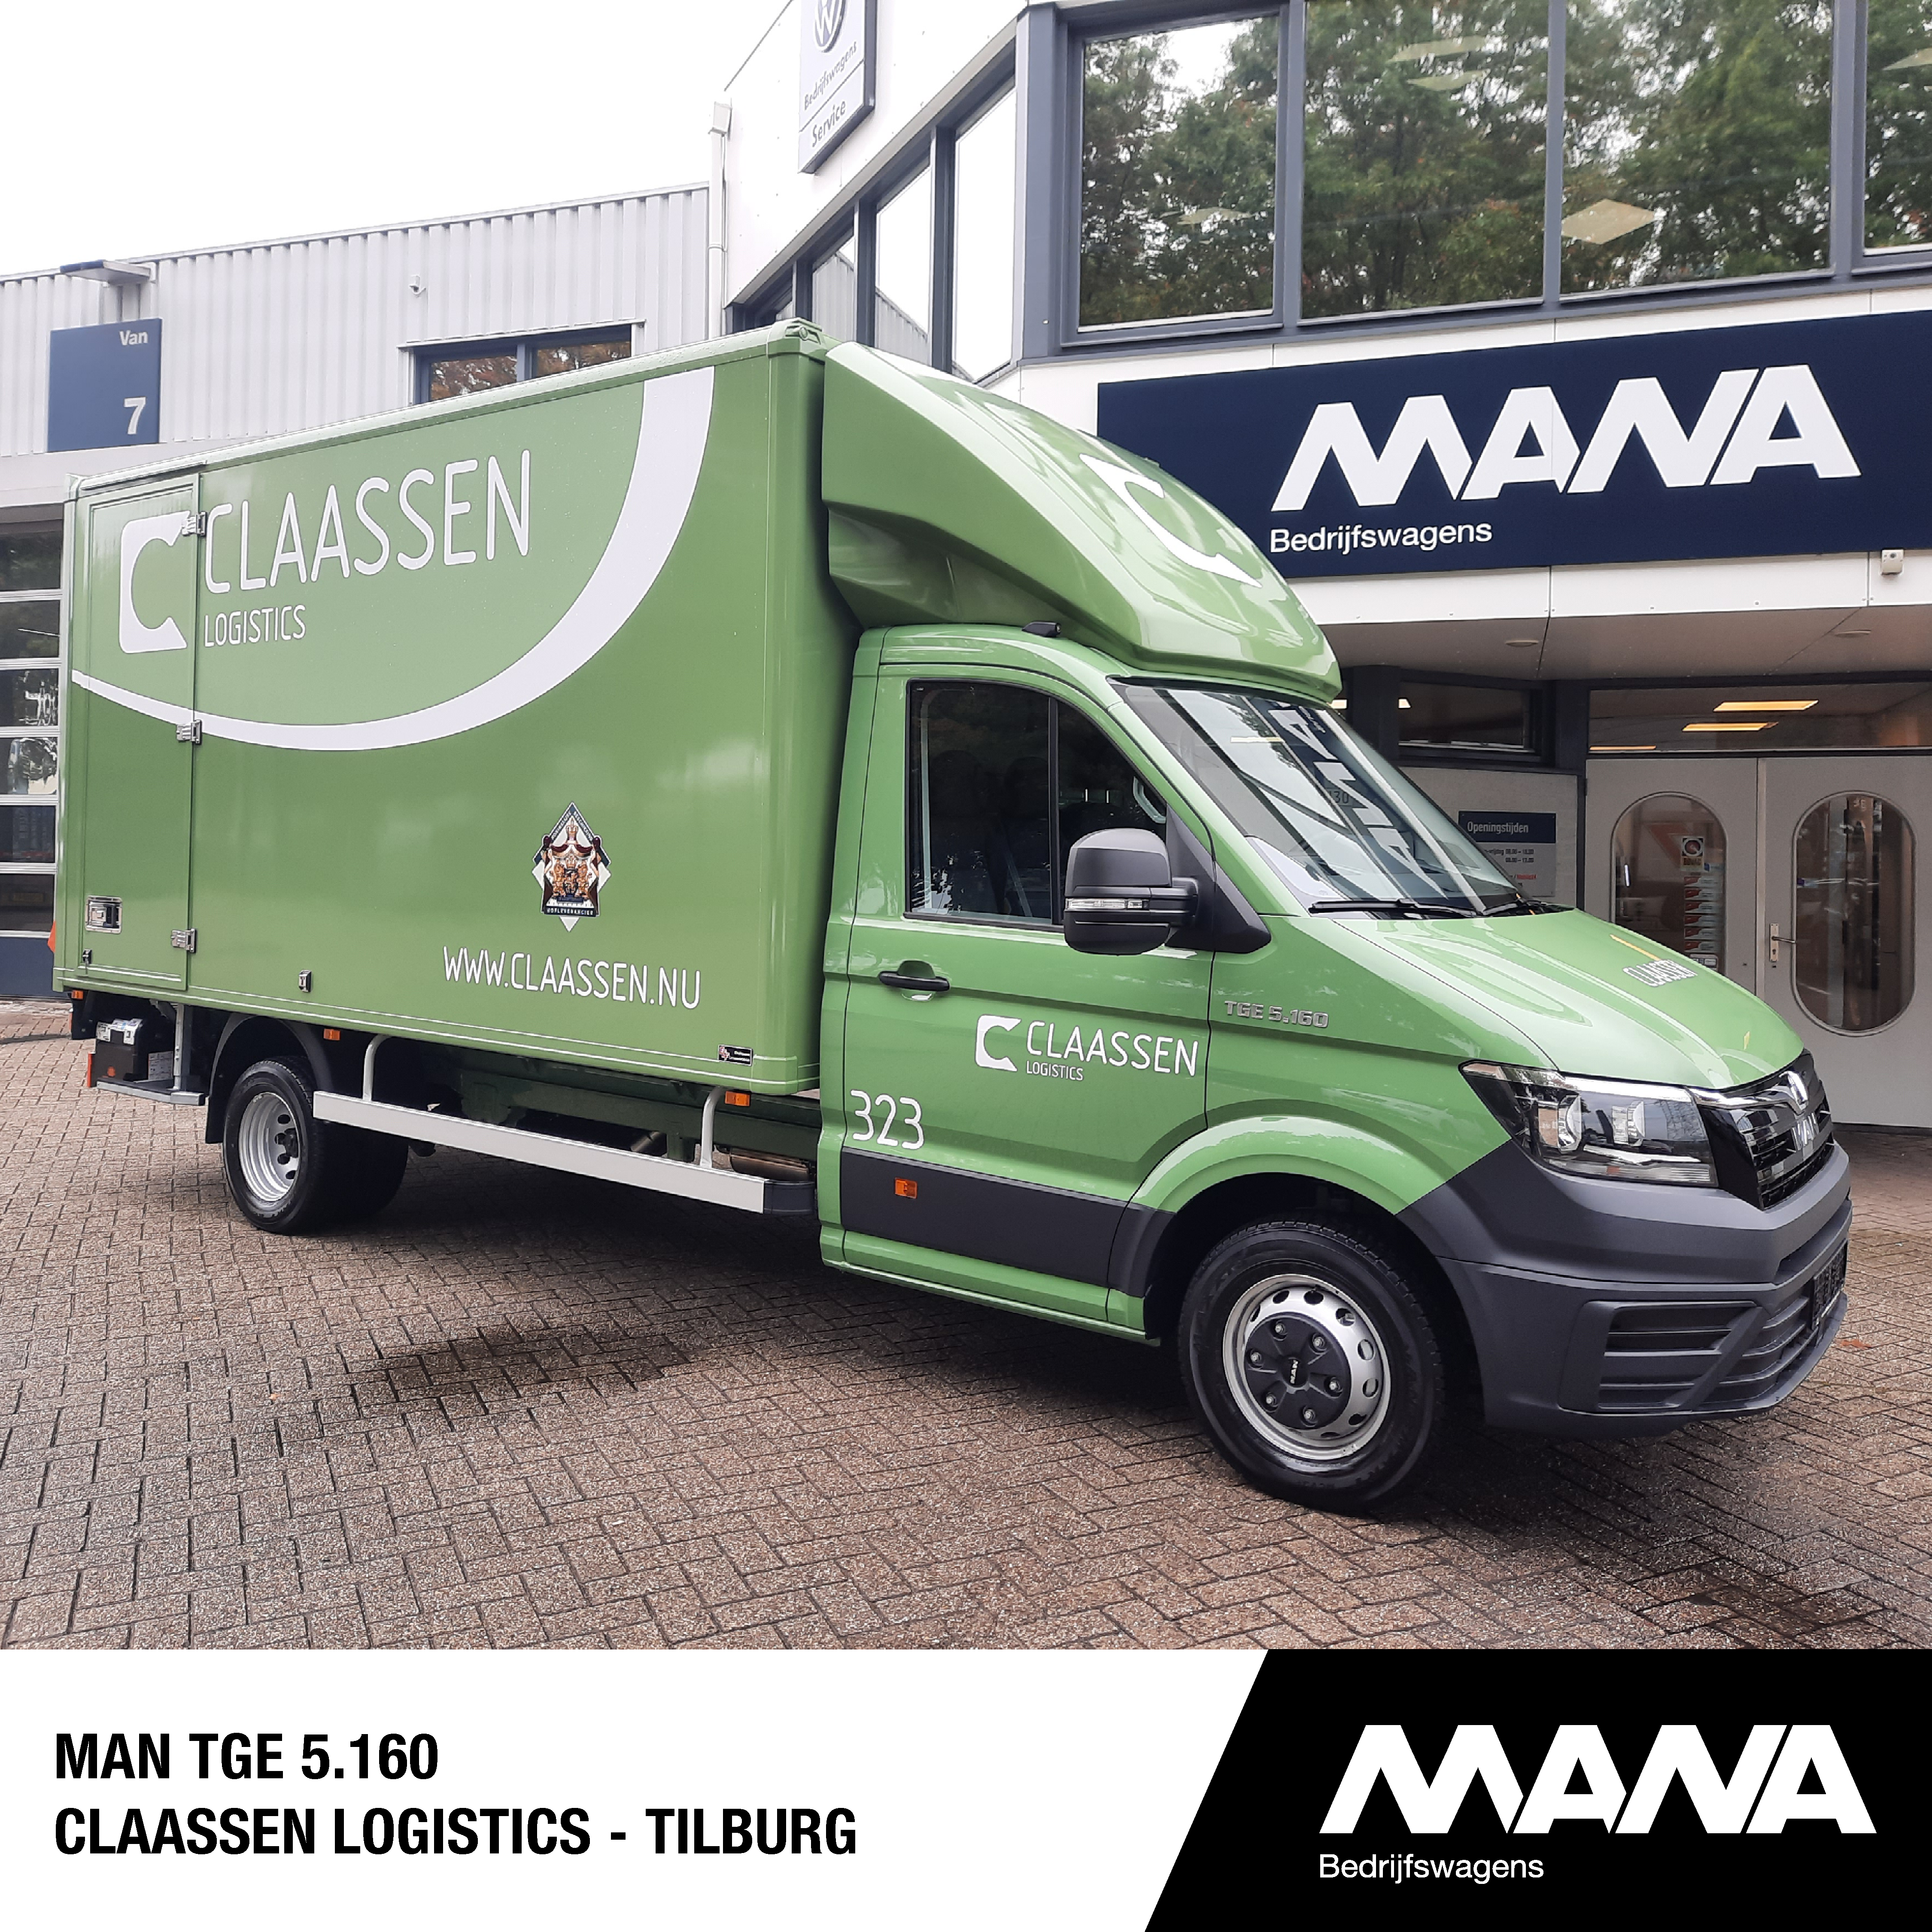 MAN TGE 5.160 Claassen Logistics - Tilburg